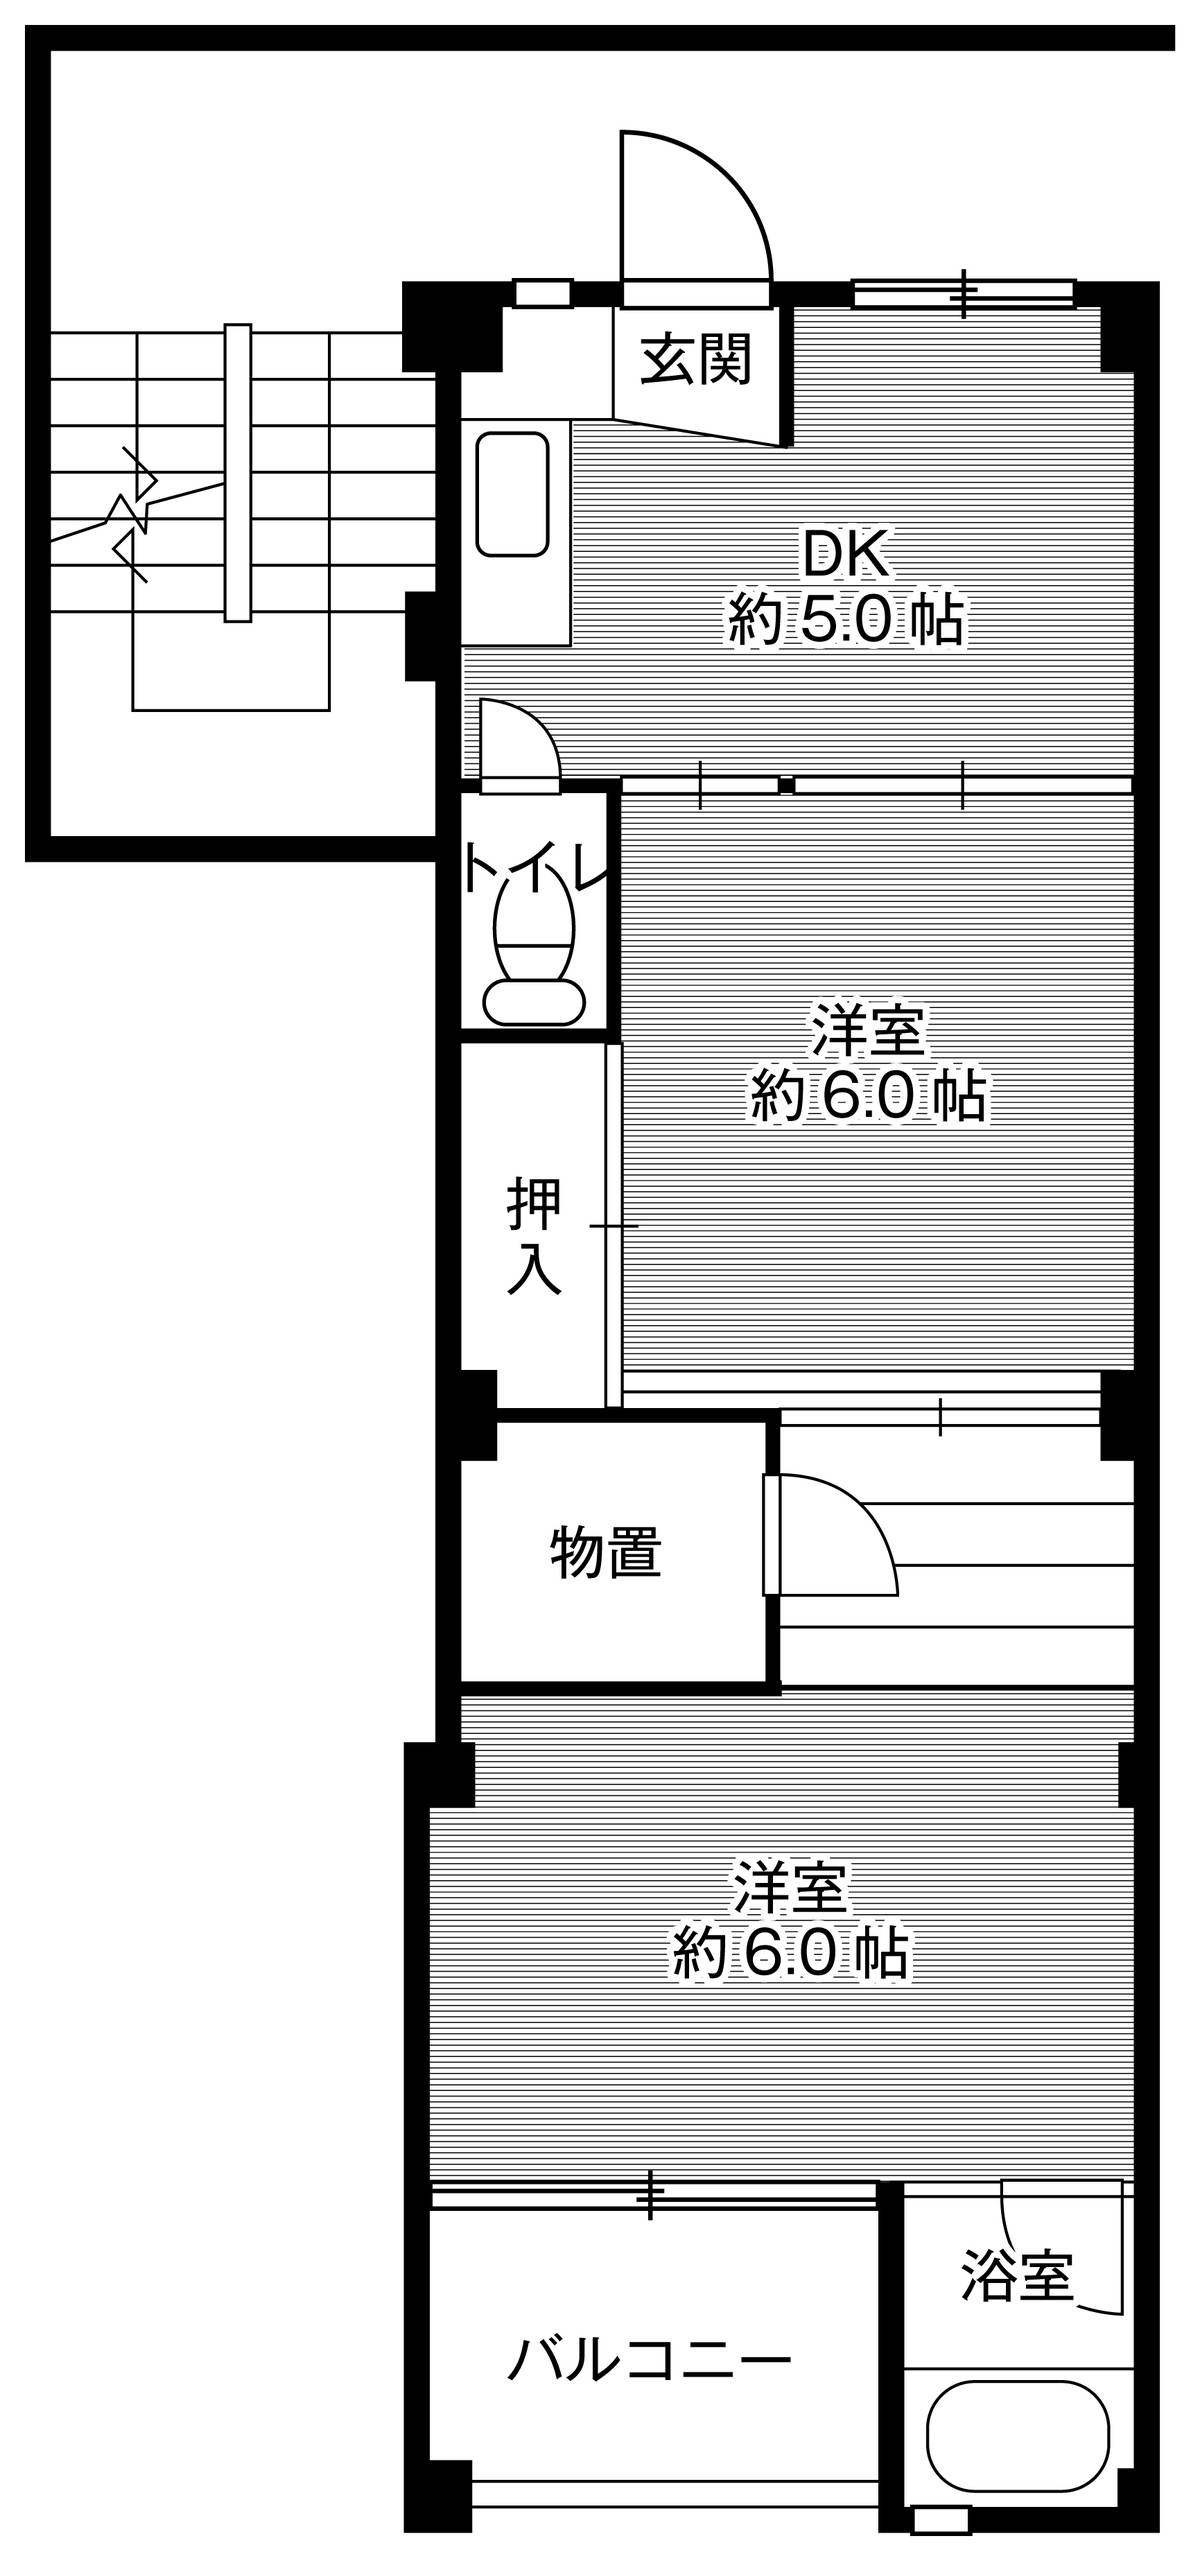 Sơ đồ phòng 2DK của Village House Daiwa ở Komaki-shi